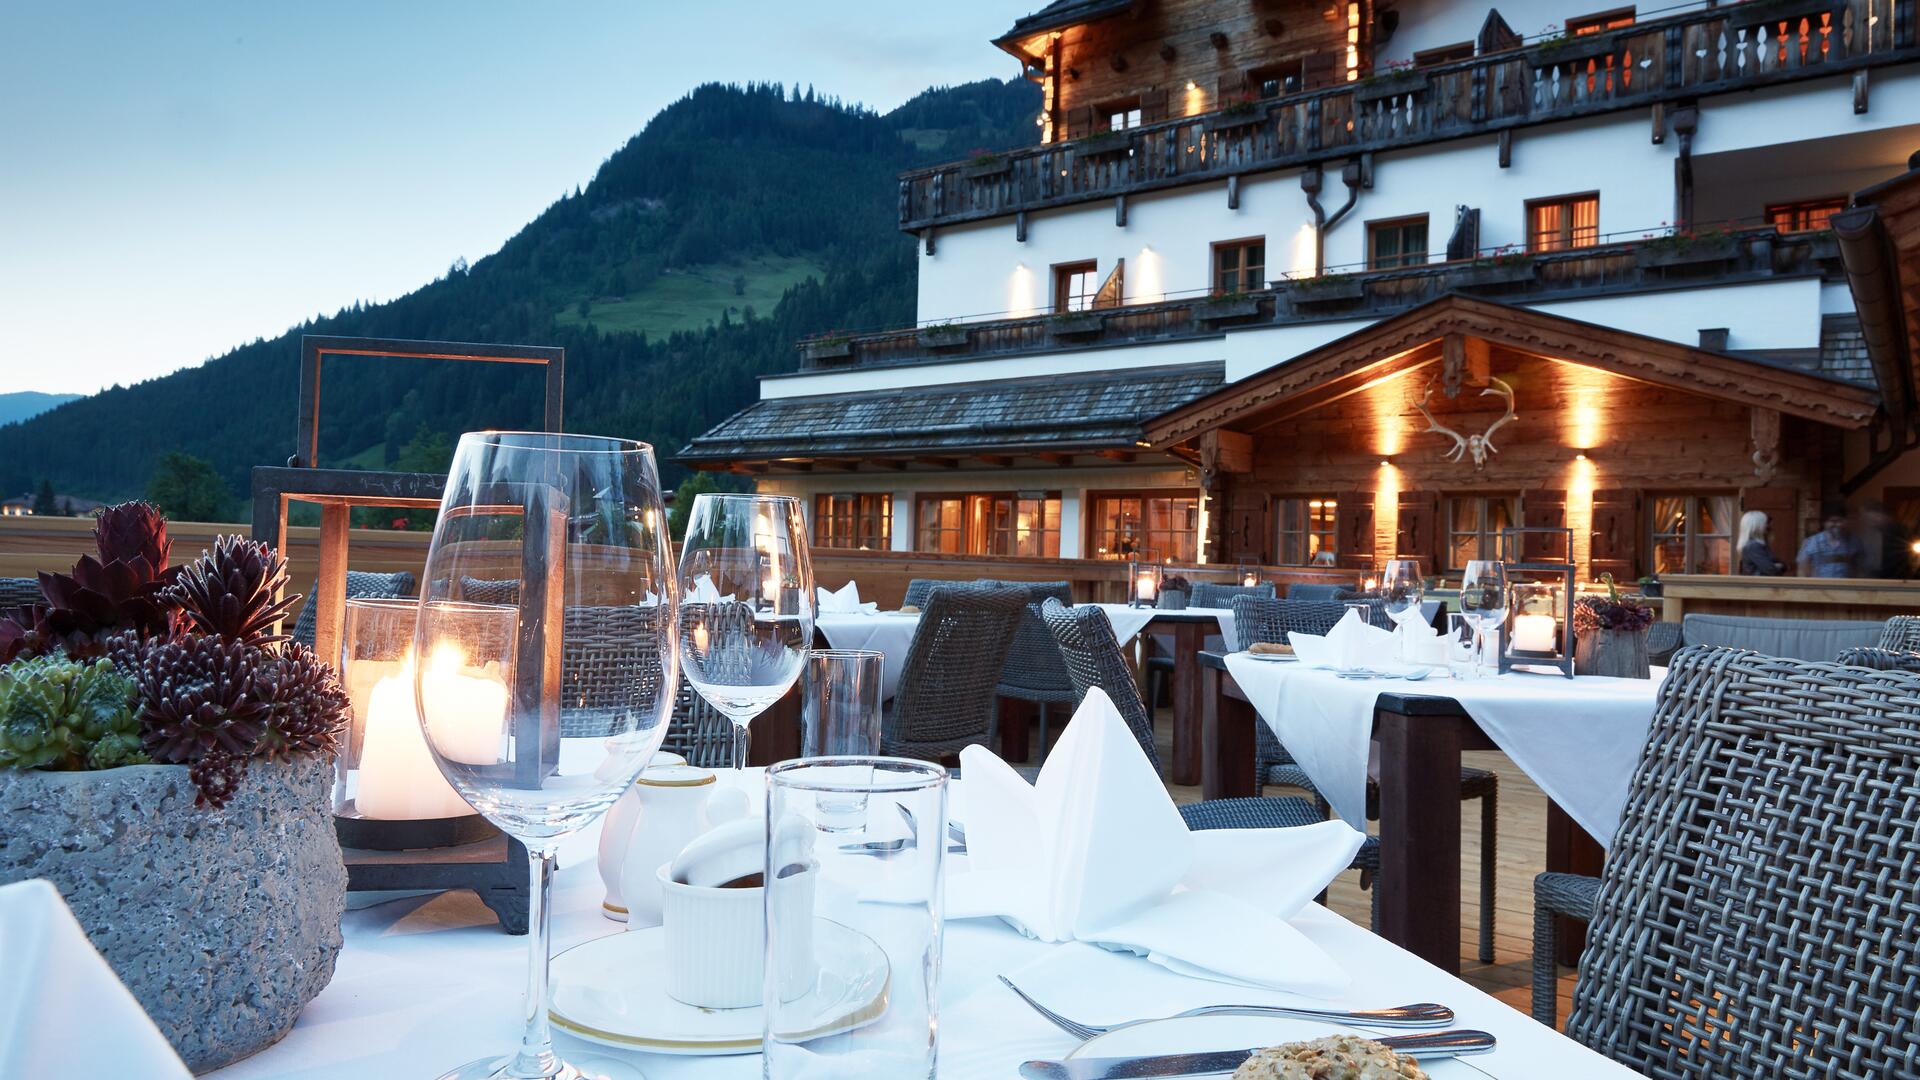 dinner on the hotel terrace | © Michael Huber I www.huber-fotografie.at